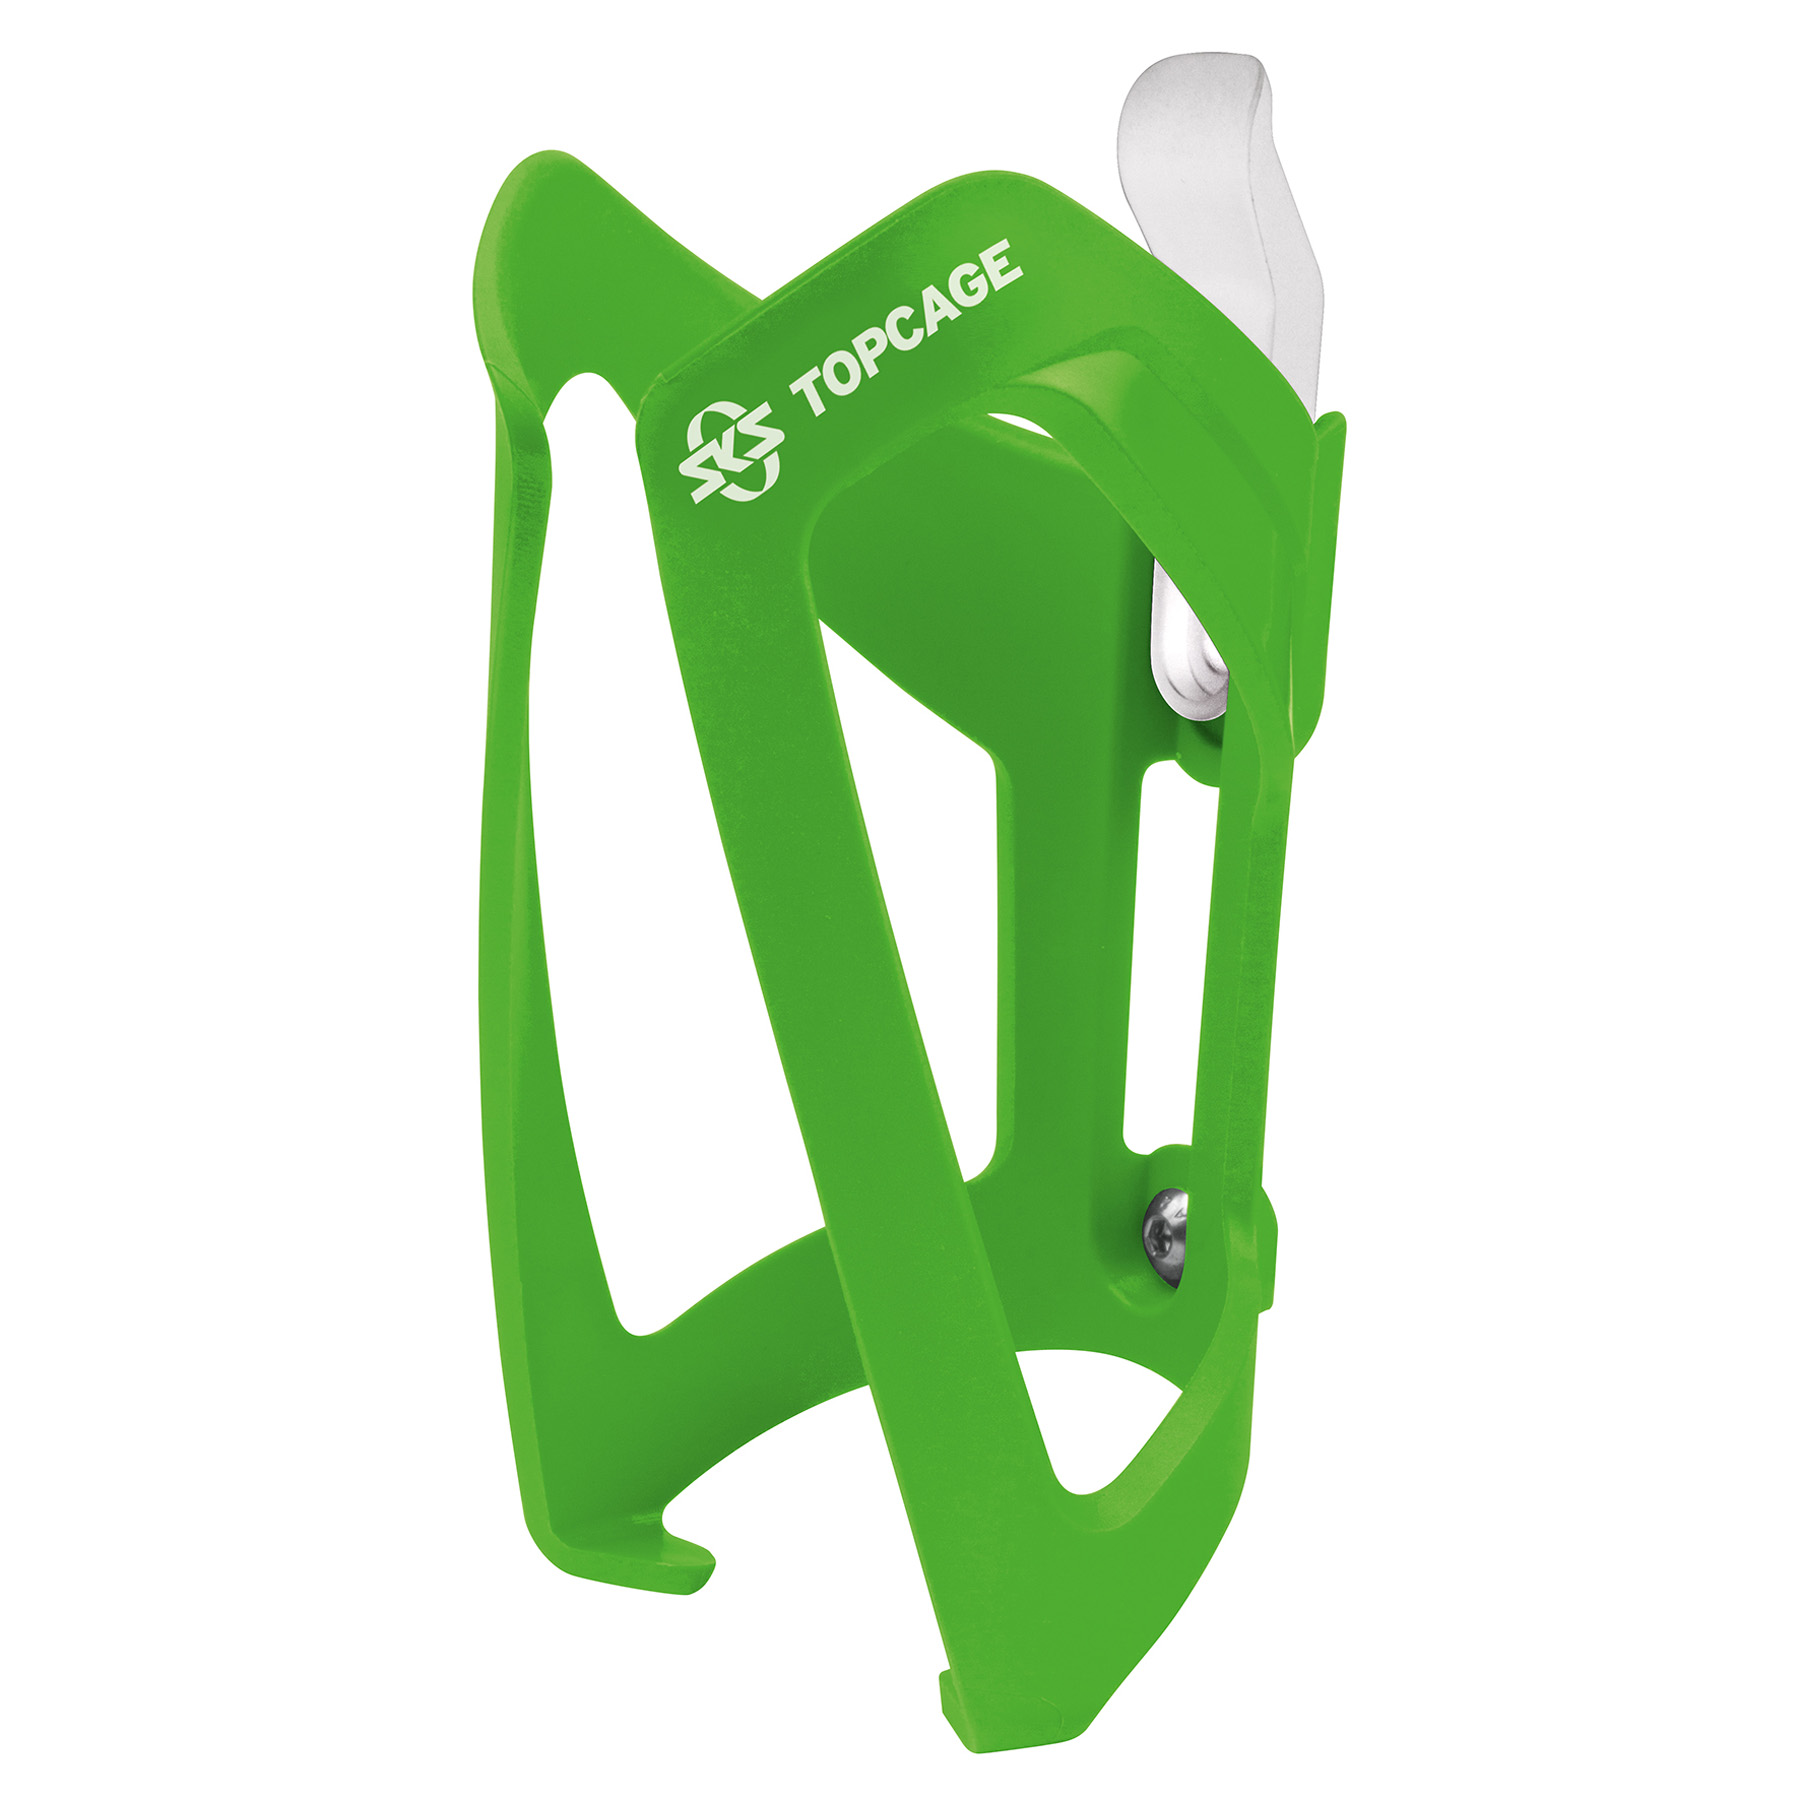 Productfoto van SKS Topcage Fleshouder - groen